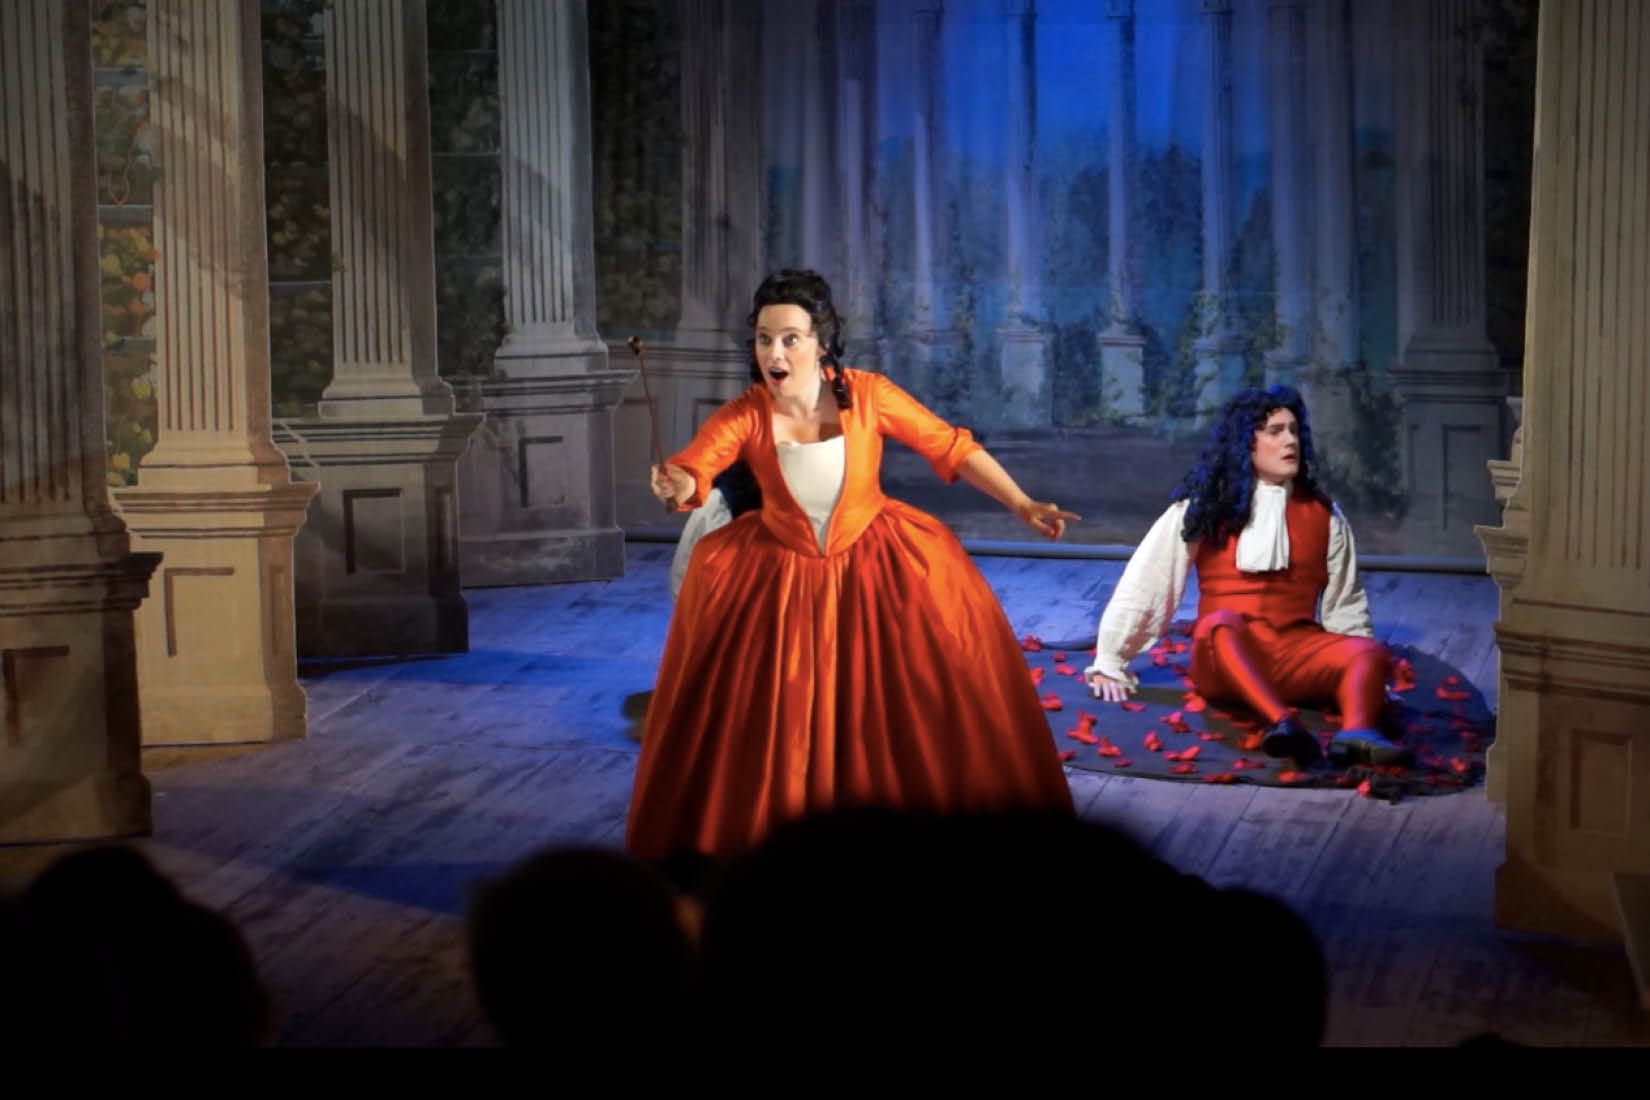 Annastina Malm, chanteuse d'opéra, chantant sur scène vêtue d'une robe d'époque orange, avec un homme assis sur le plancher en arrière-plan.